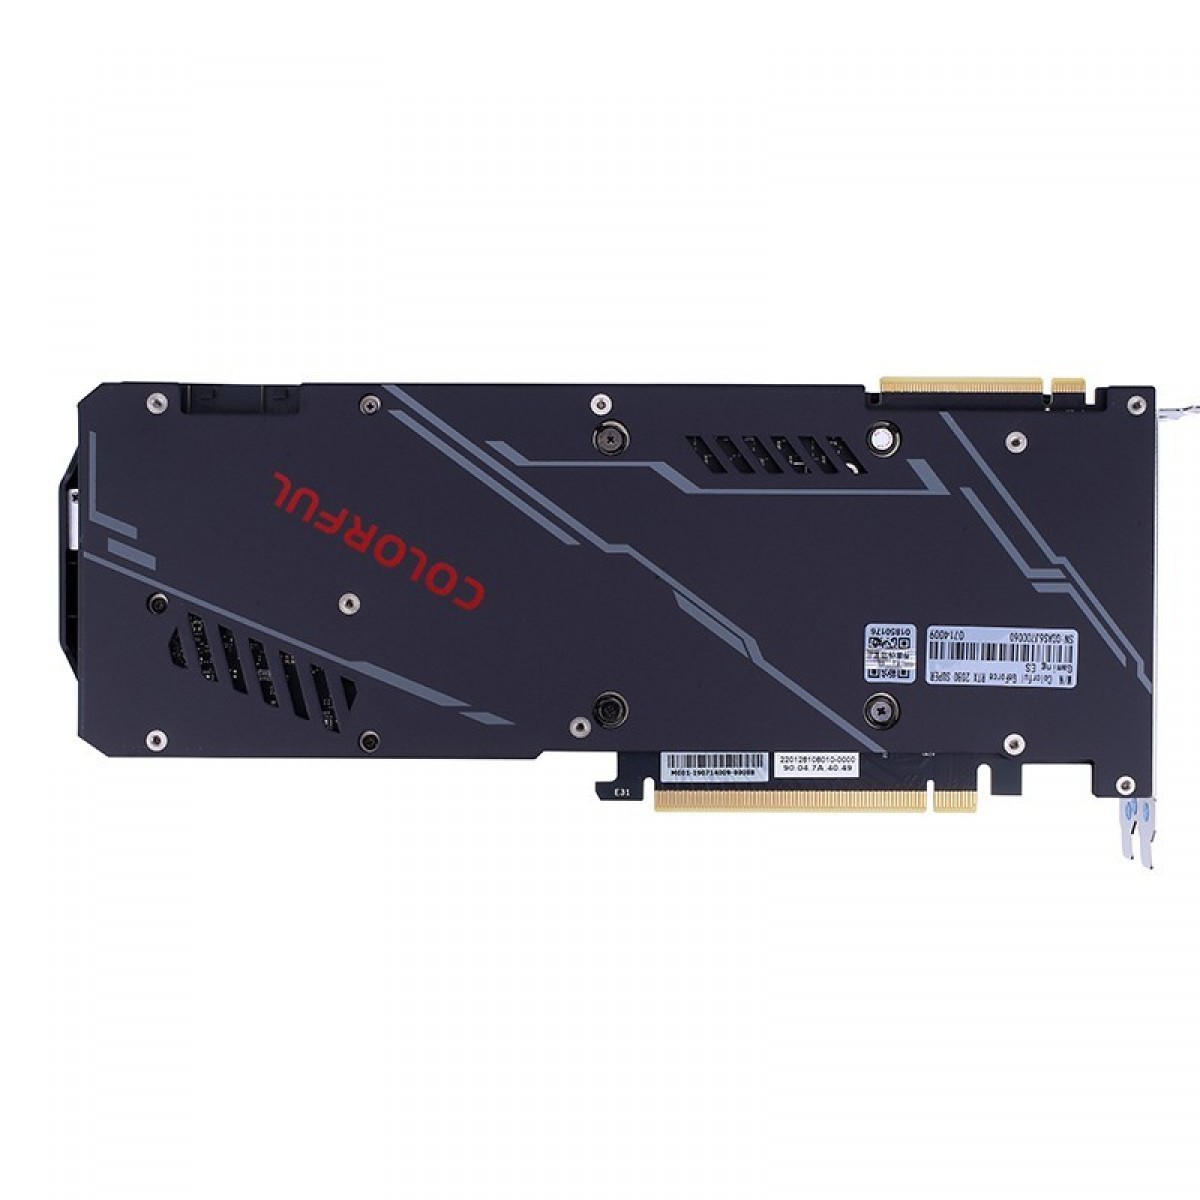 Placa de Vídeo Colorful GeForce RTX 2080 Super 8G-V, 8GB GDDR6, 256Bit